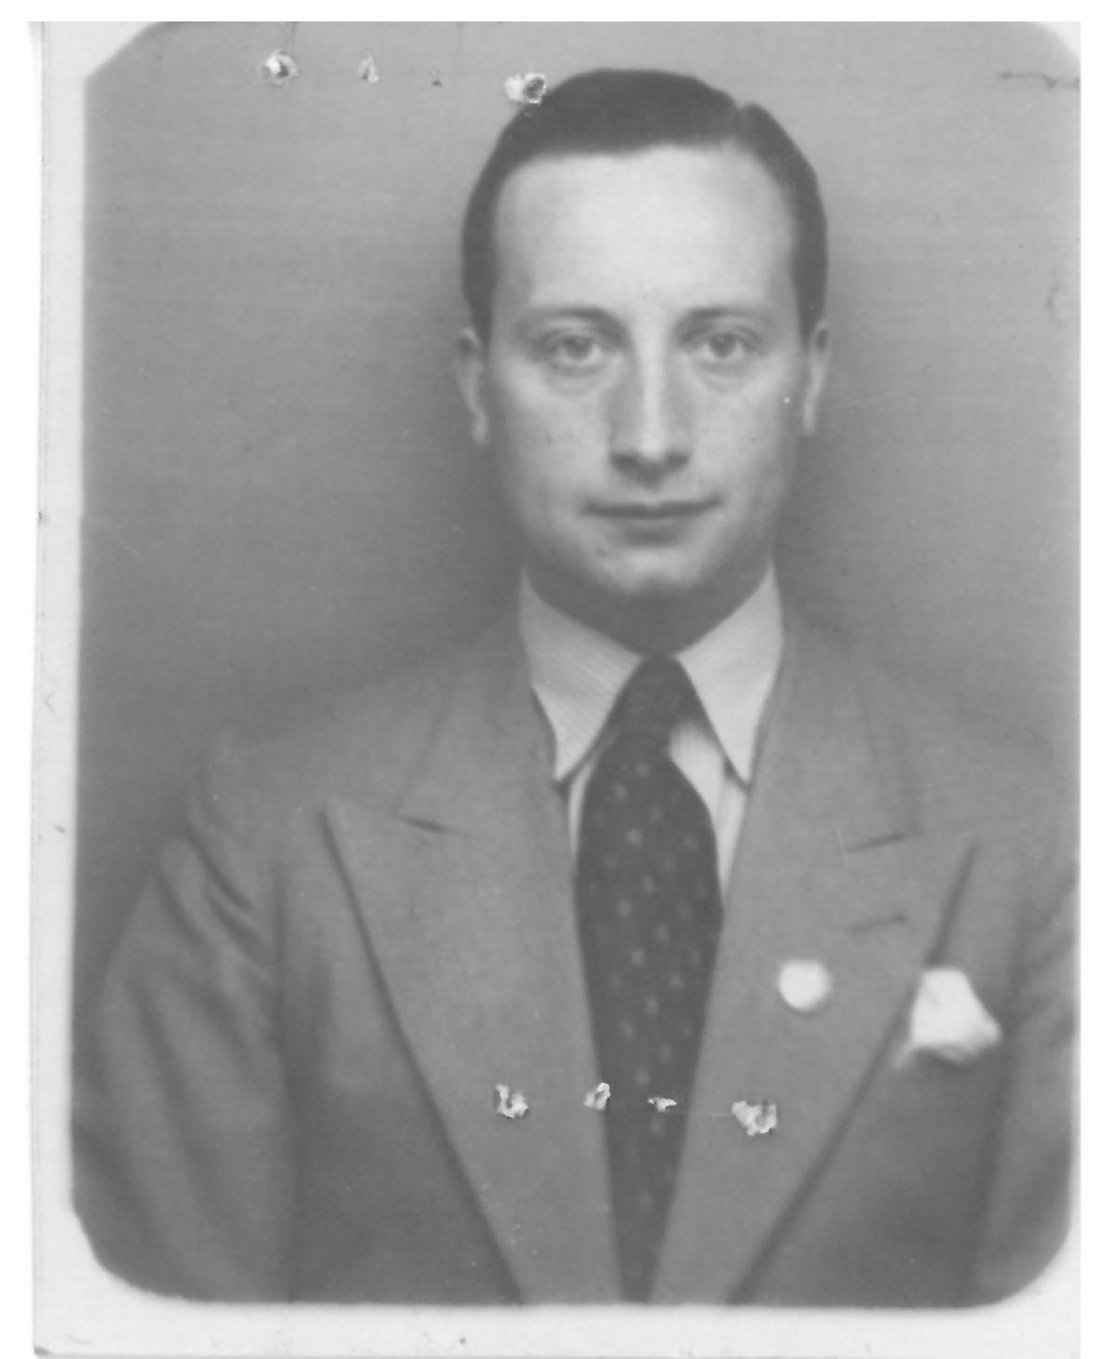 Benno Griebert, photographie de 1938. Source : Bundesarchiv Berlin-Lichterfelde, Akte R 9361-V 20159.